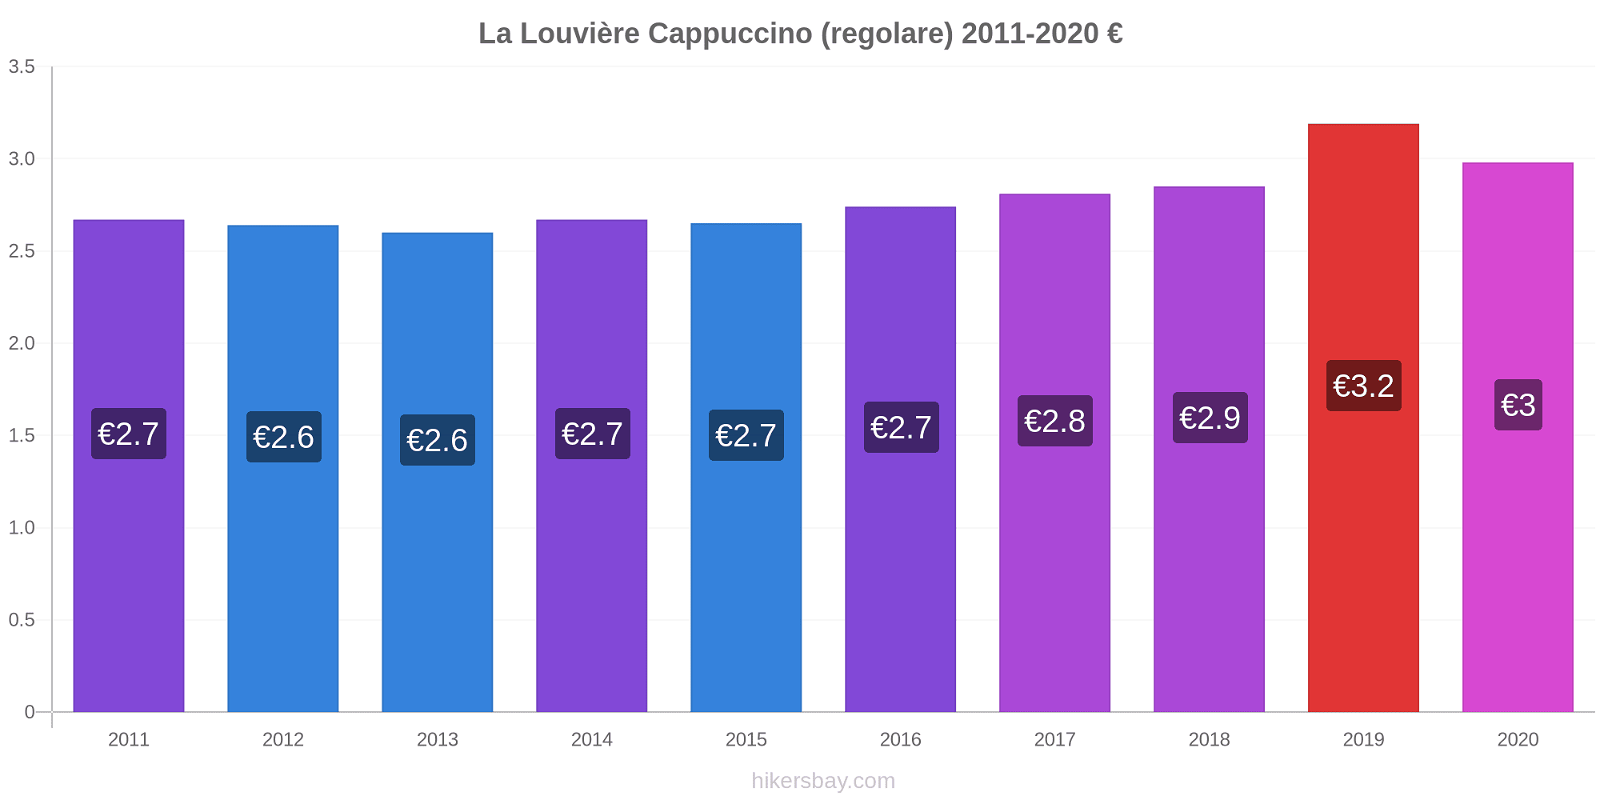 La Louvière variazioni di prezzo Cappuccino (normale) hikersbay.com